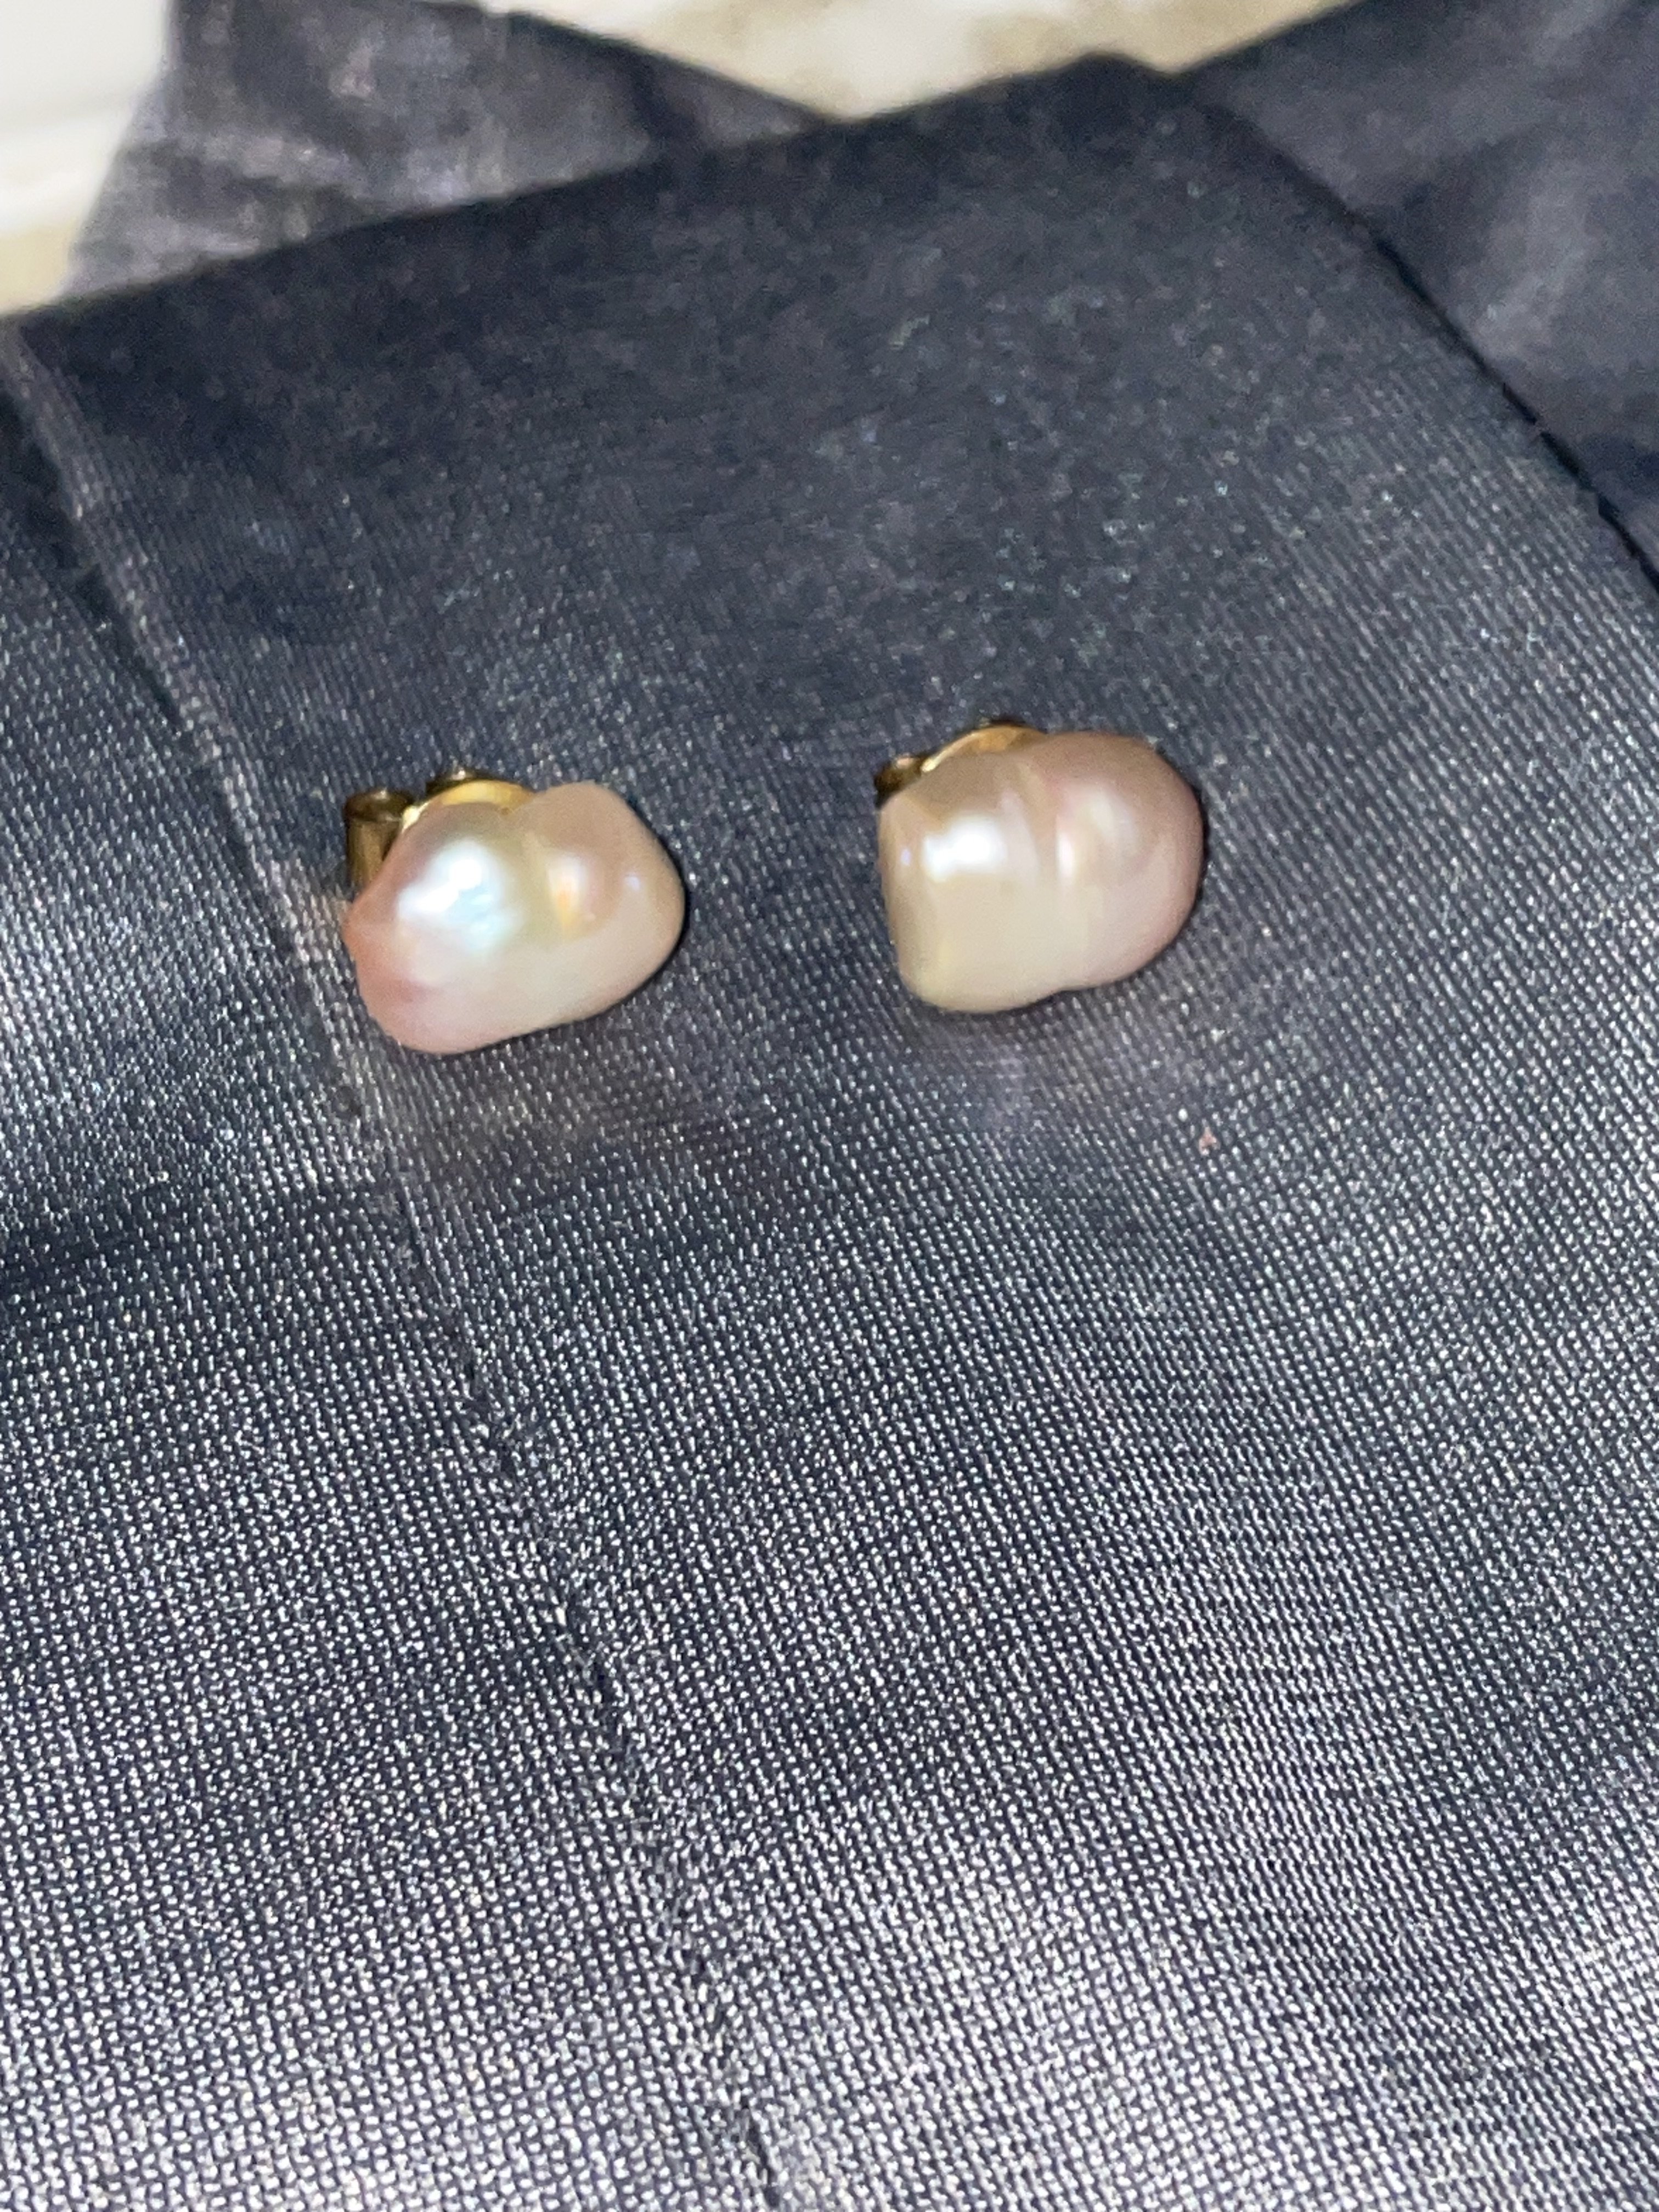 baroque pearl earring stud pair